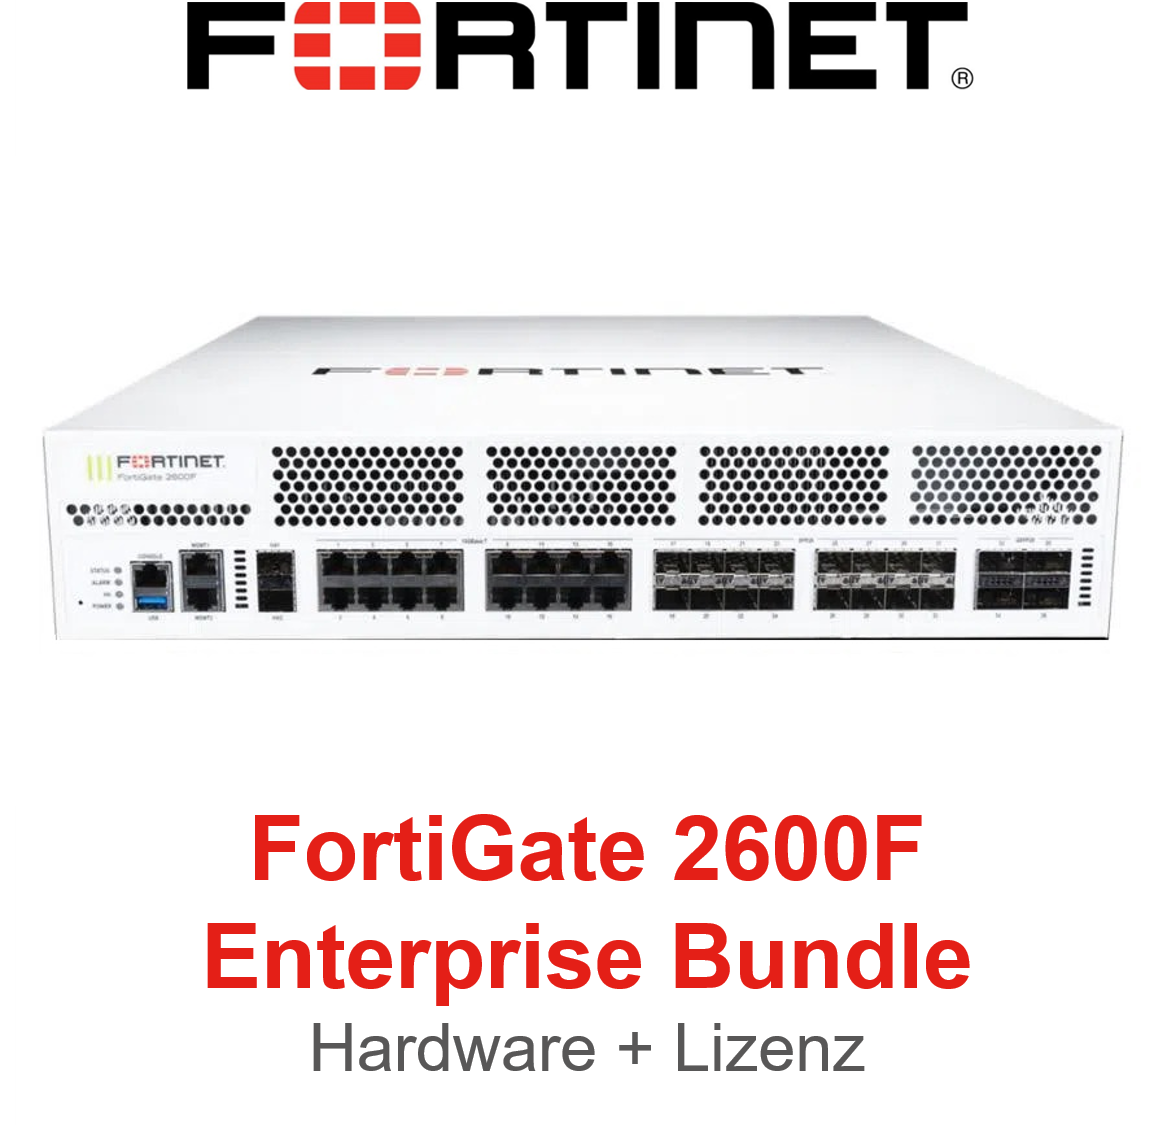 Fortinet FortiGate 2600F - Enterprise Bundle (Hardware + Lizenz)